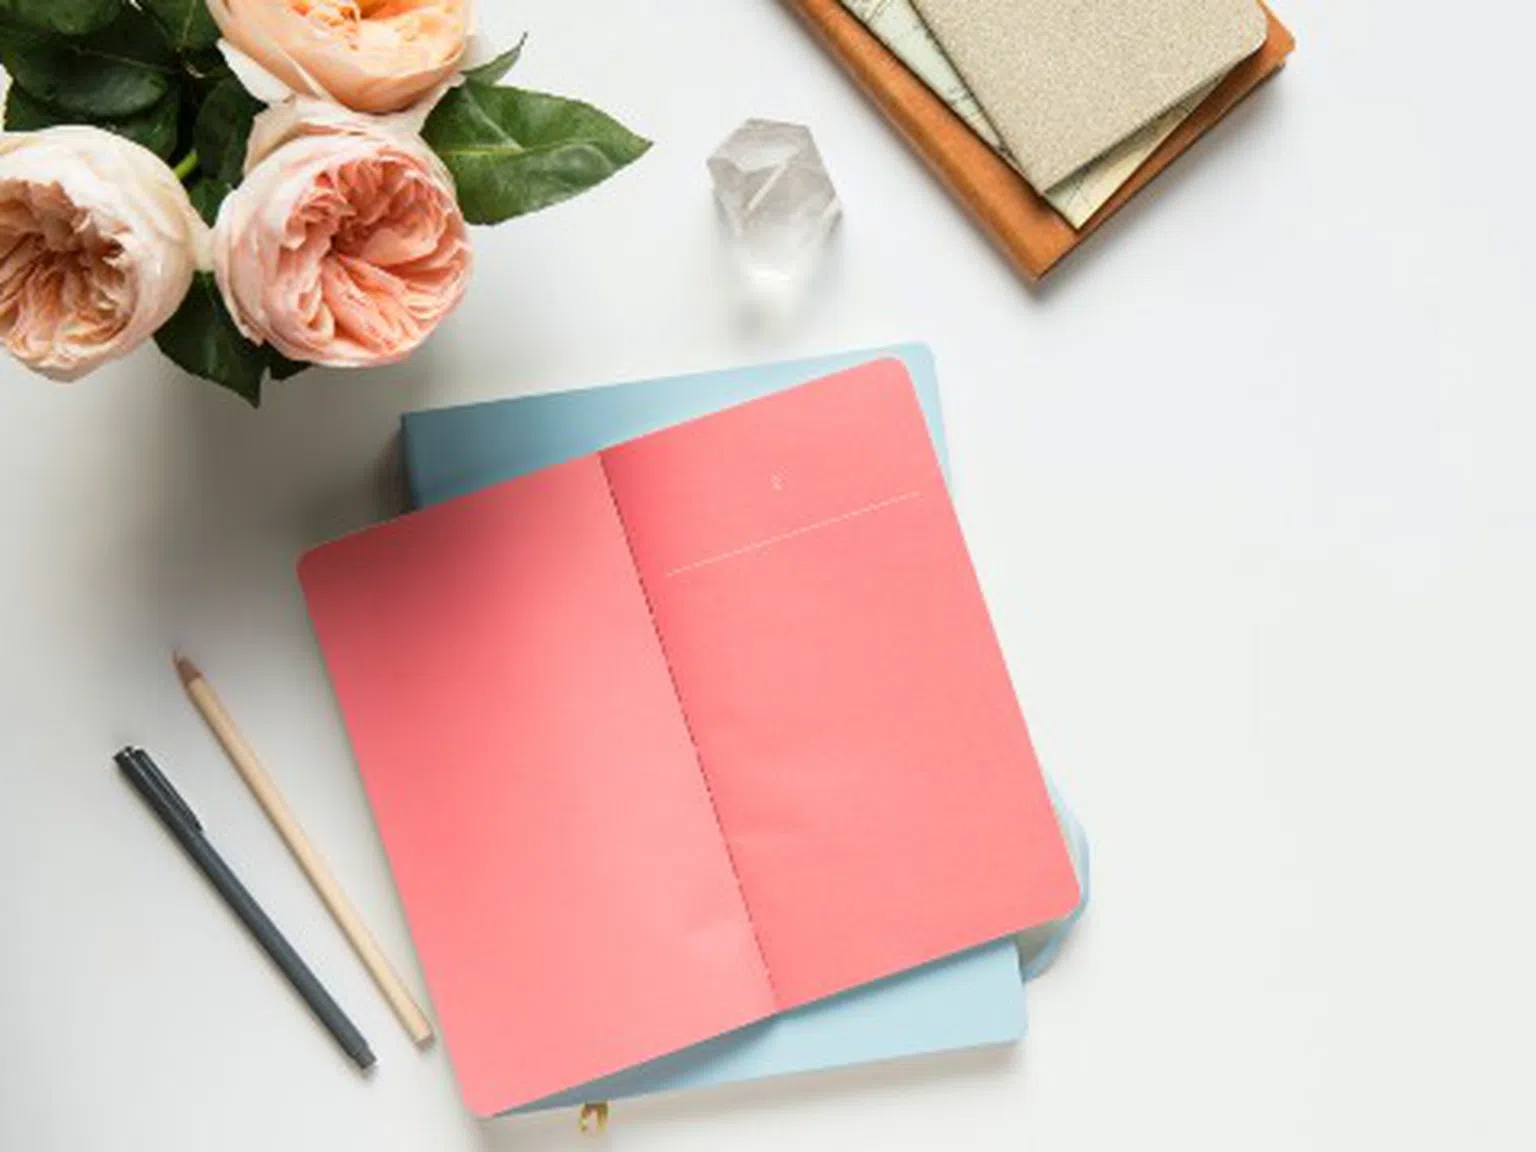 Този малък навик ще ви помогне да бъдете щастливи: Напишете писмо до себе си